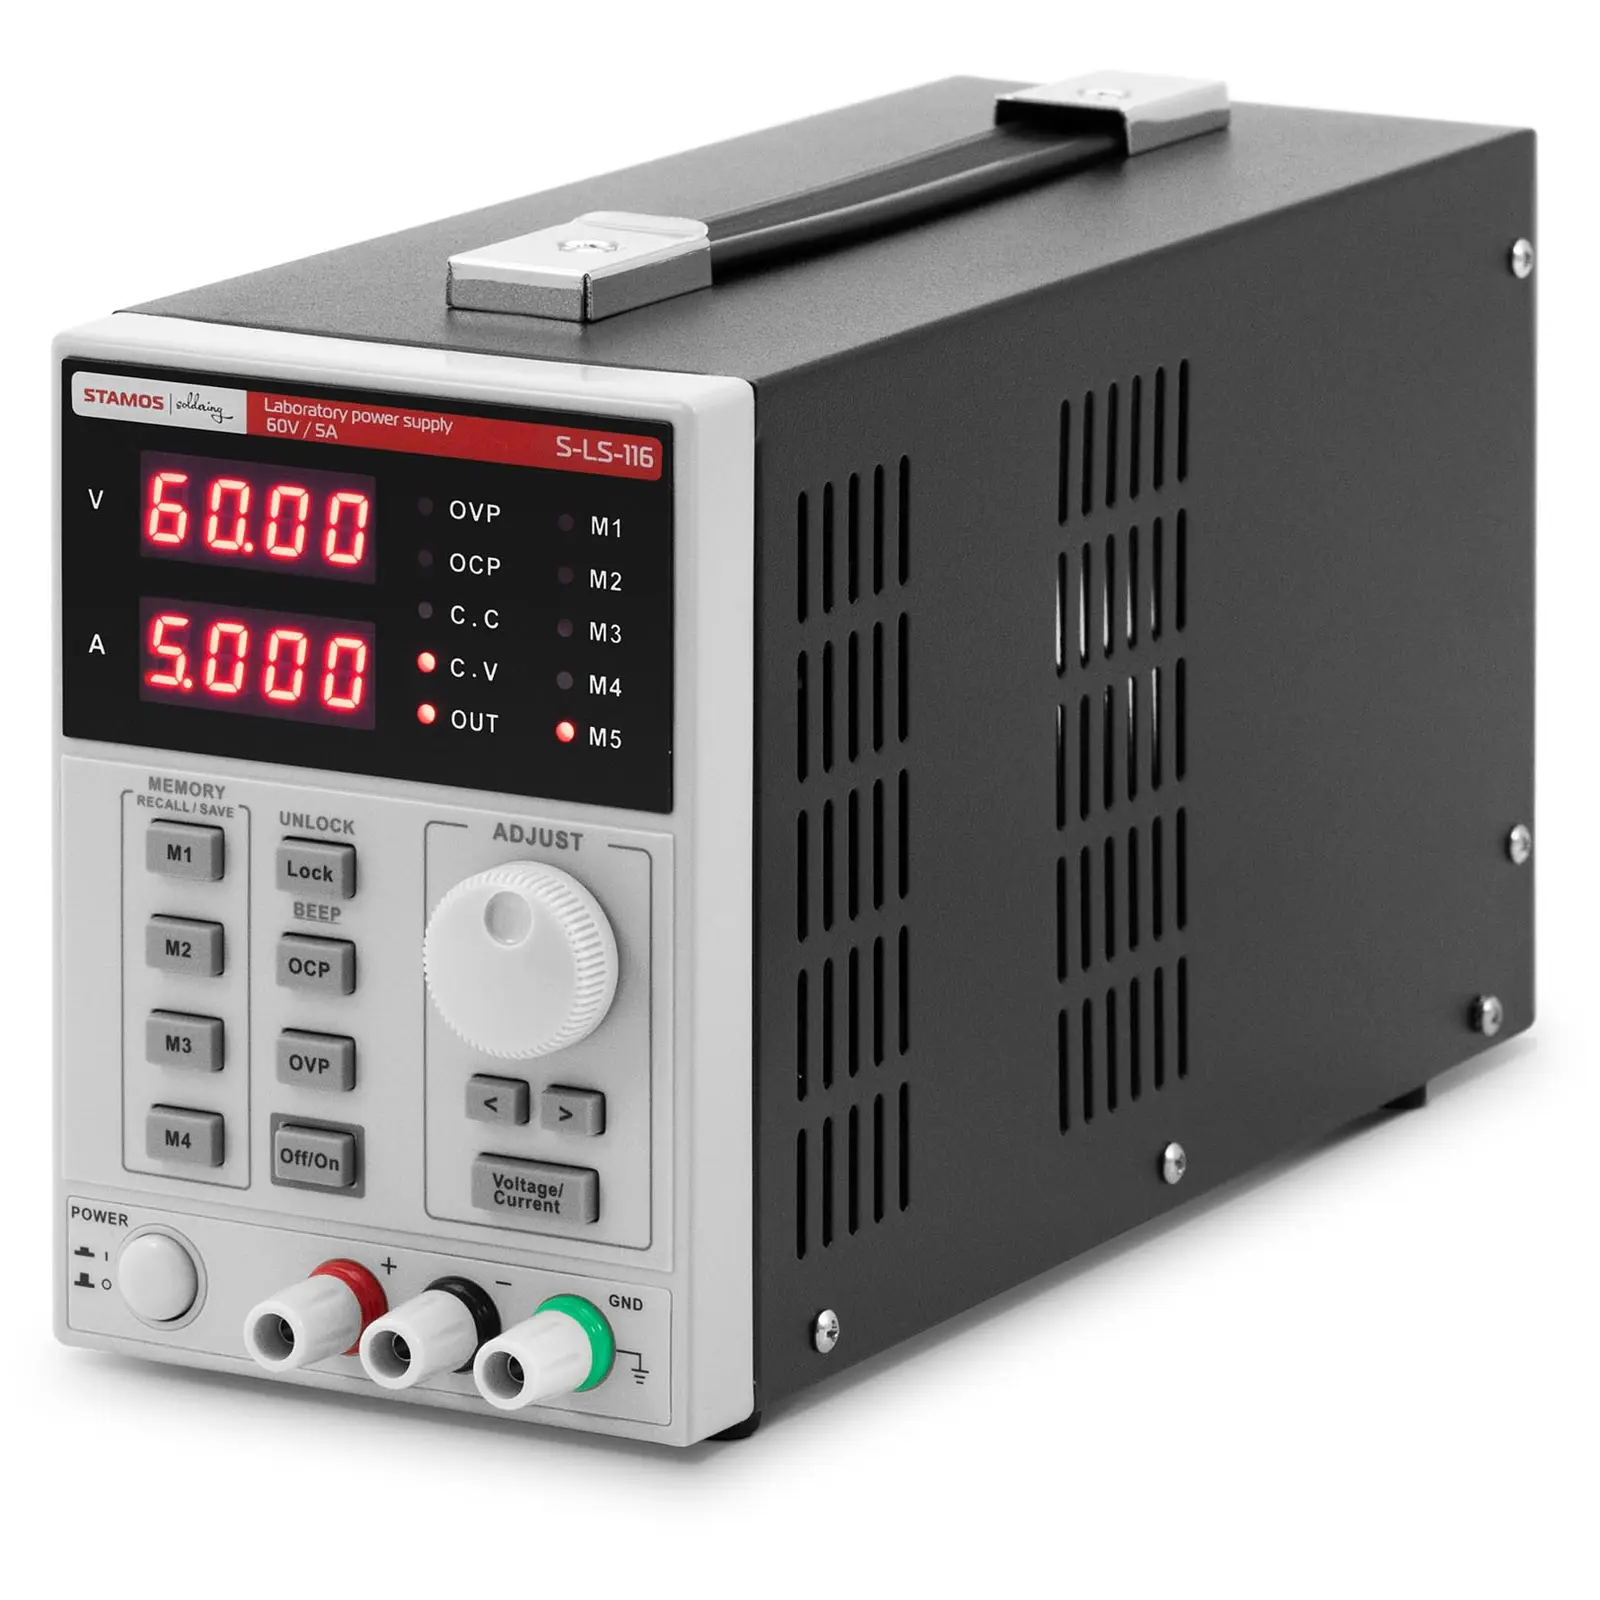 Fuente de alimentación para laboratorio - 0 - 60 V - 0 - 5 A DC - 300 W - 5 puestos de memoria - pantalla LED - USB/RS232